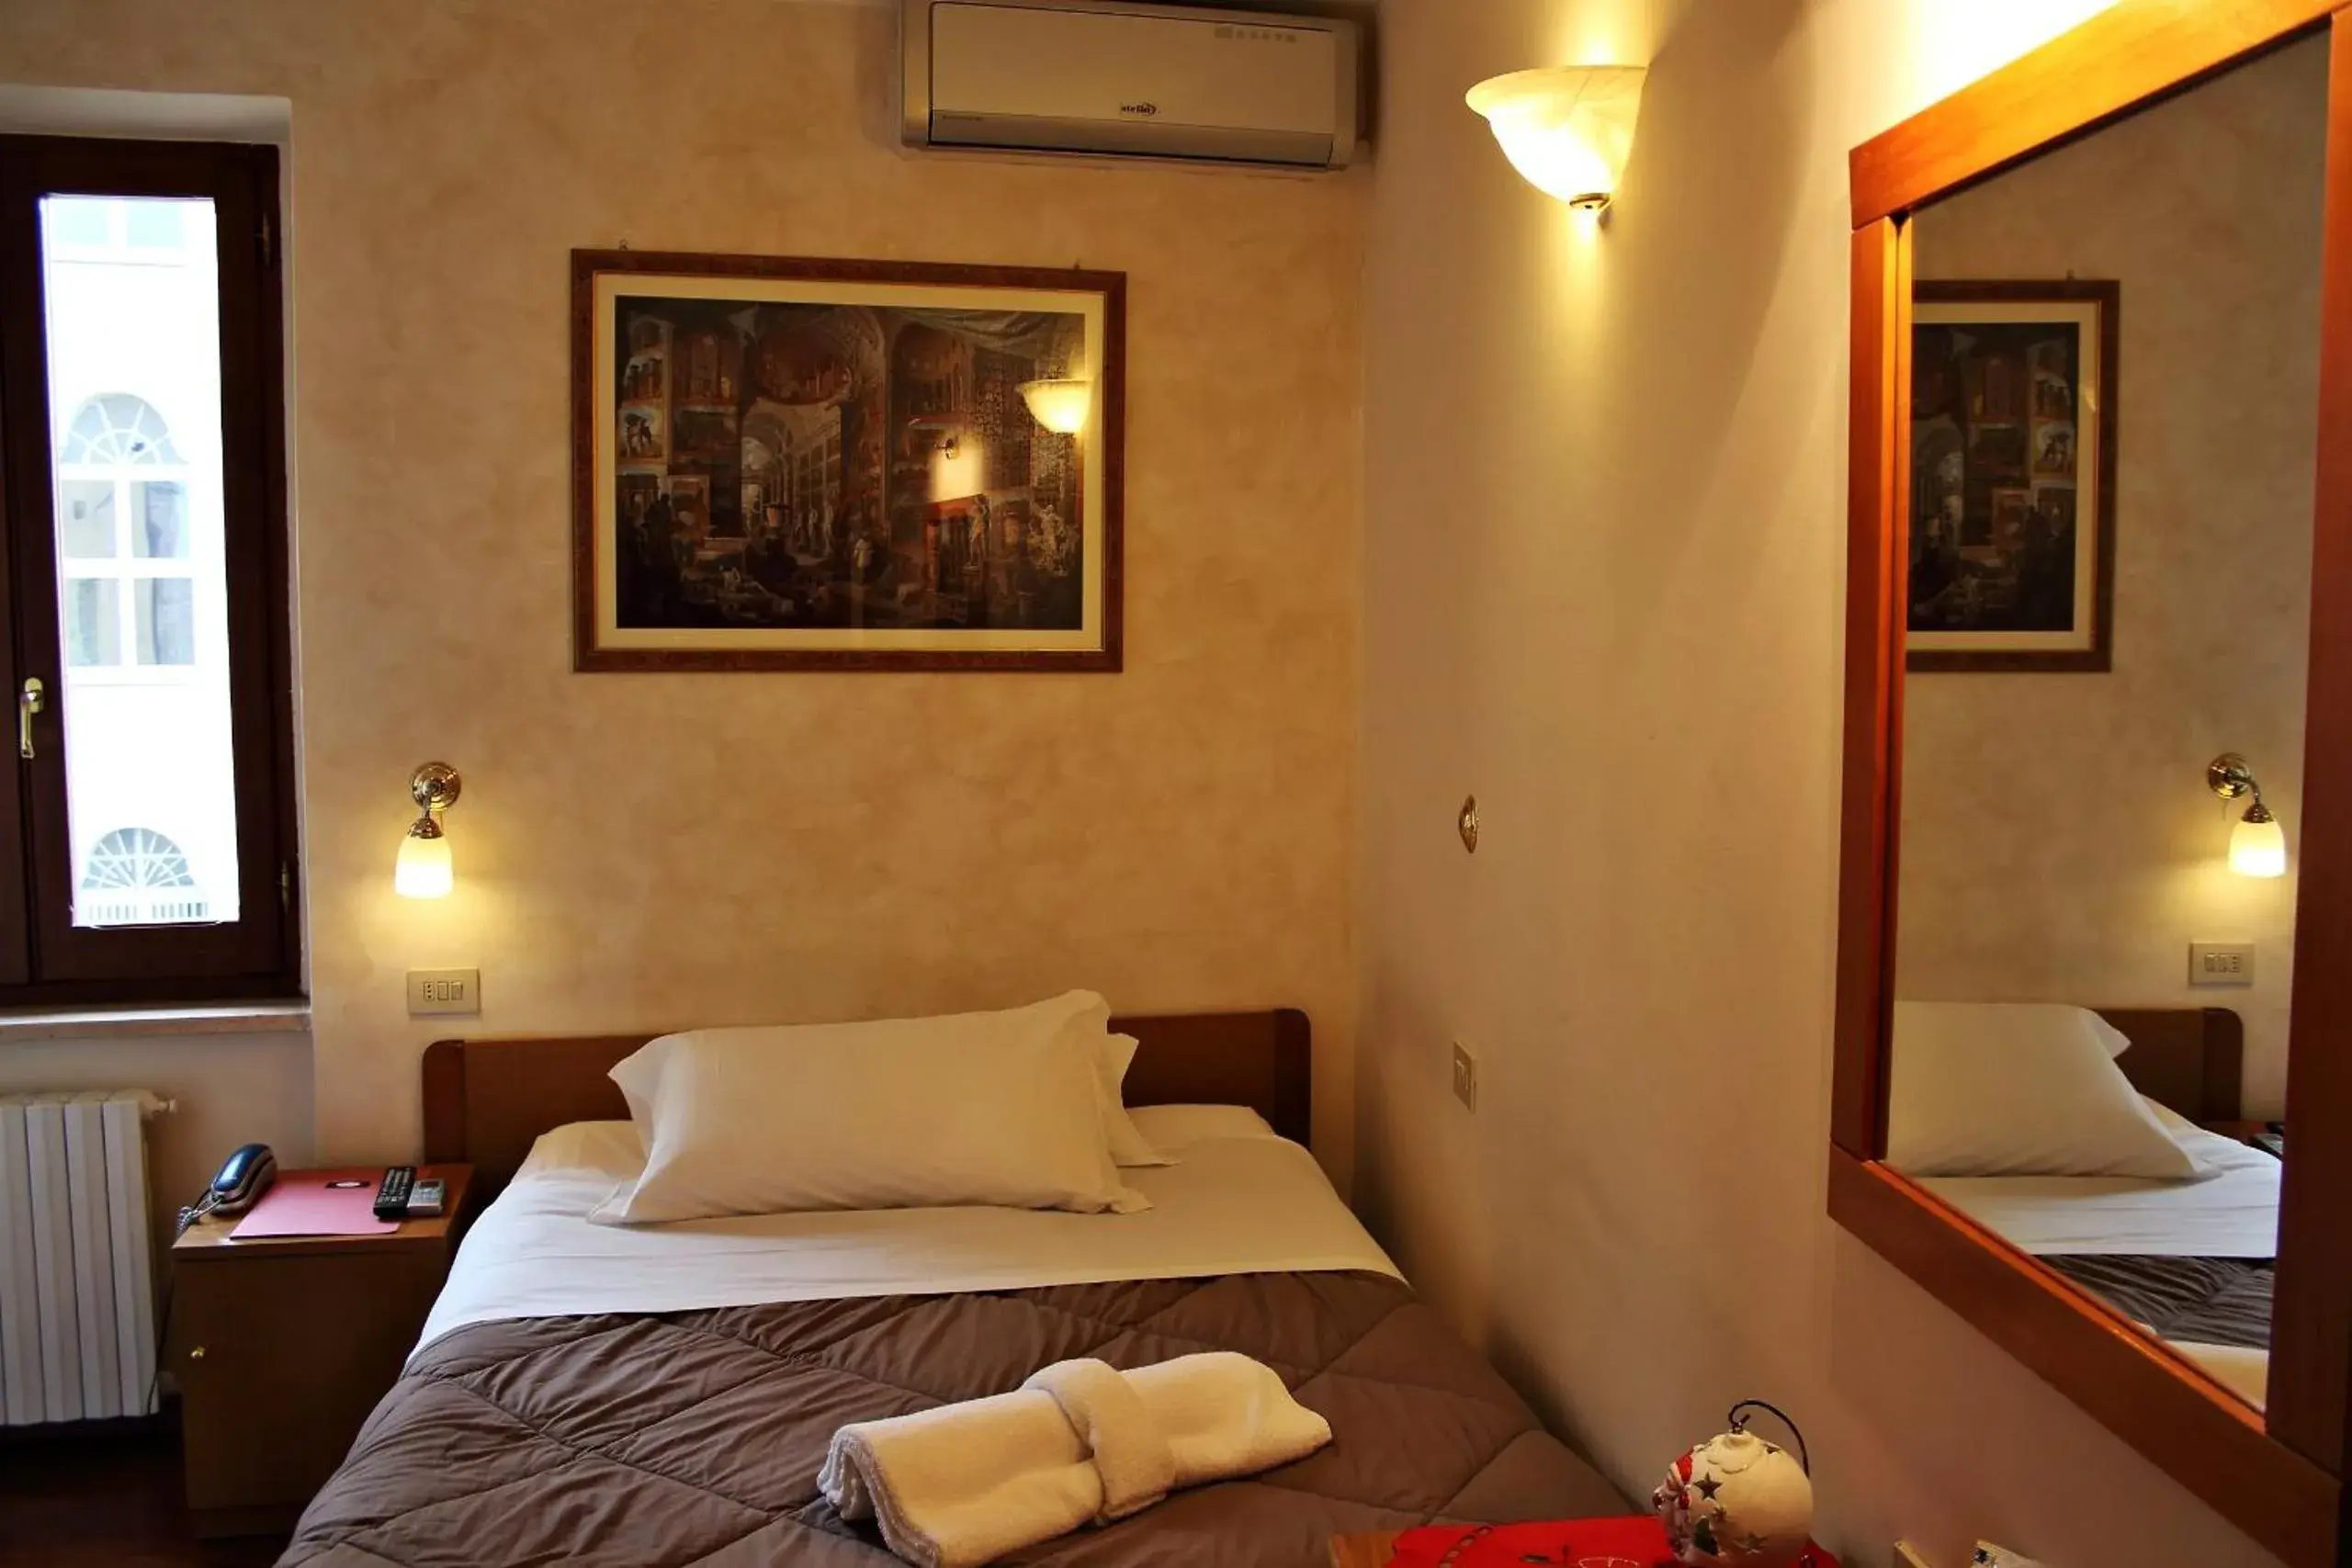 Bed, Room Photo in Primavera Mini Hotel